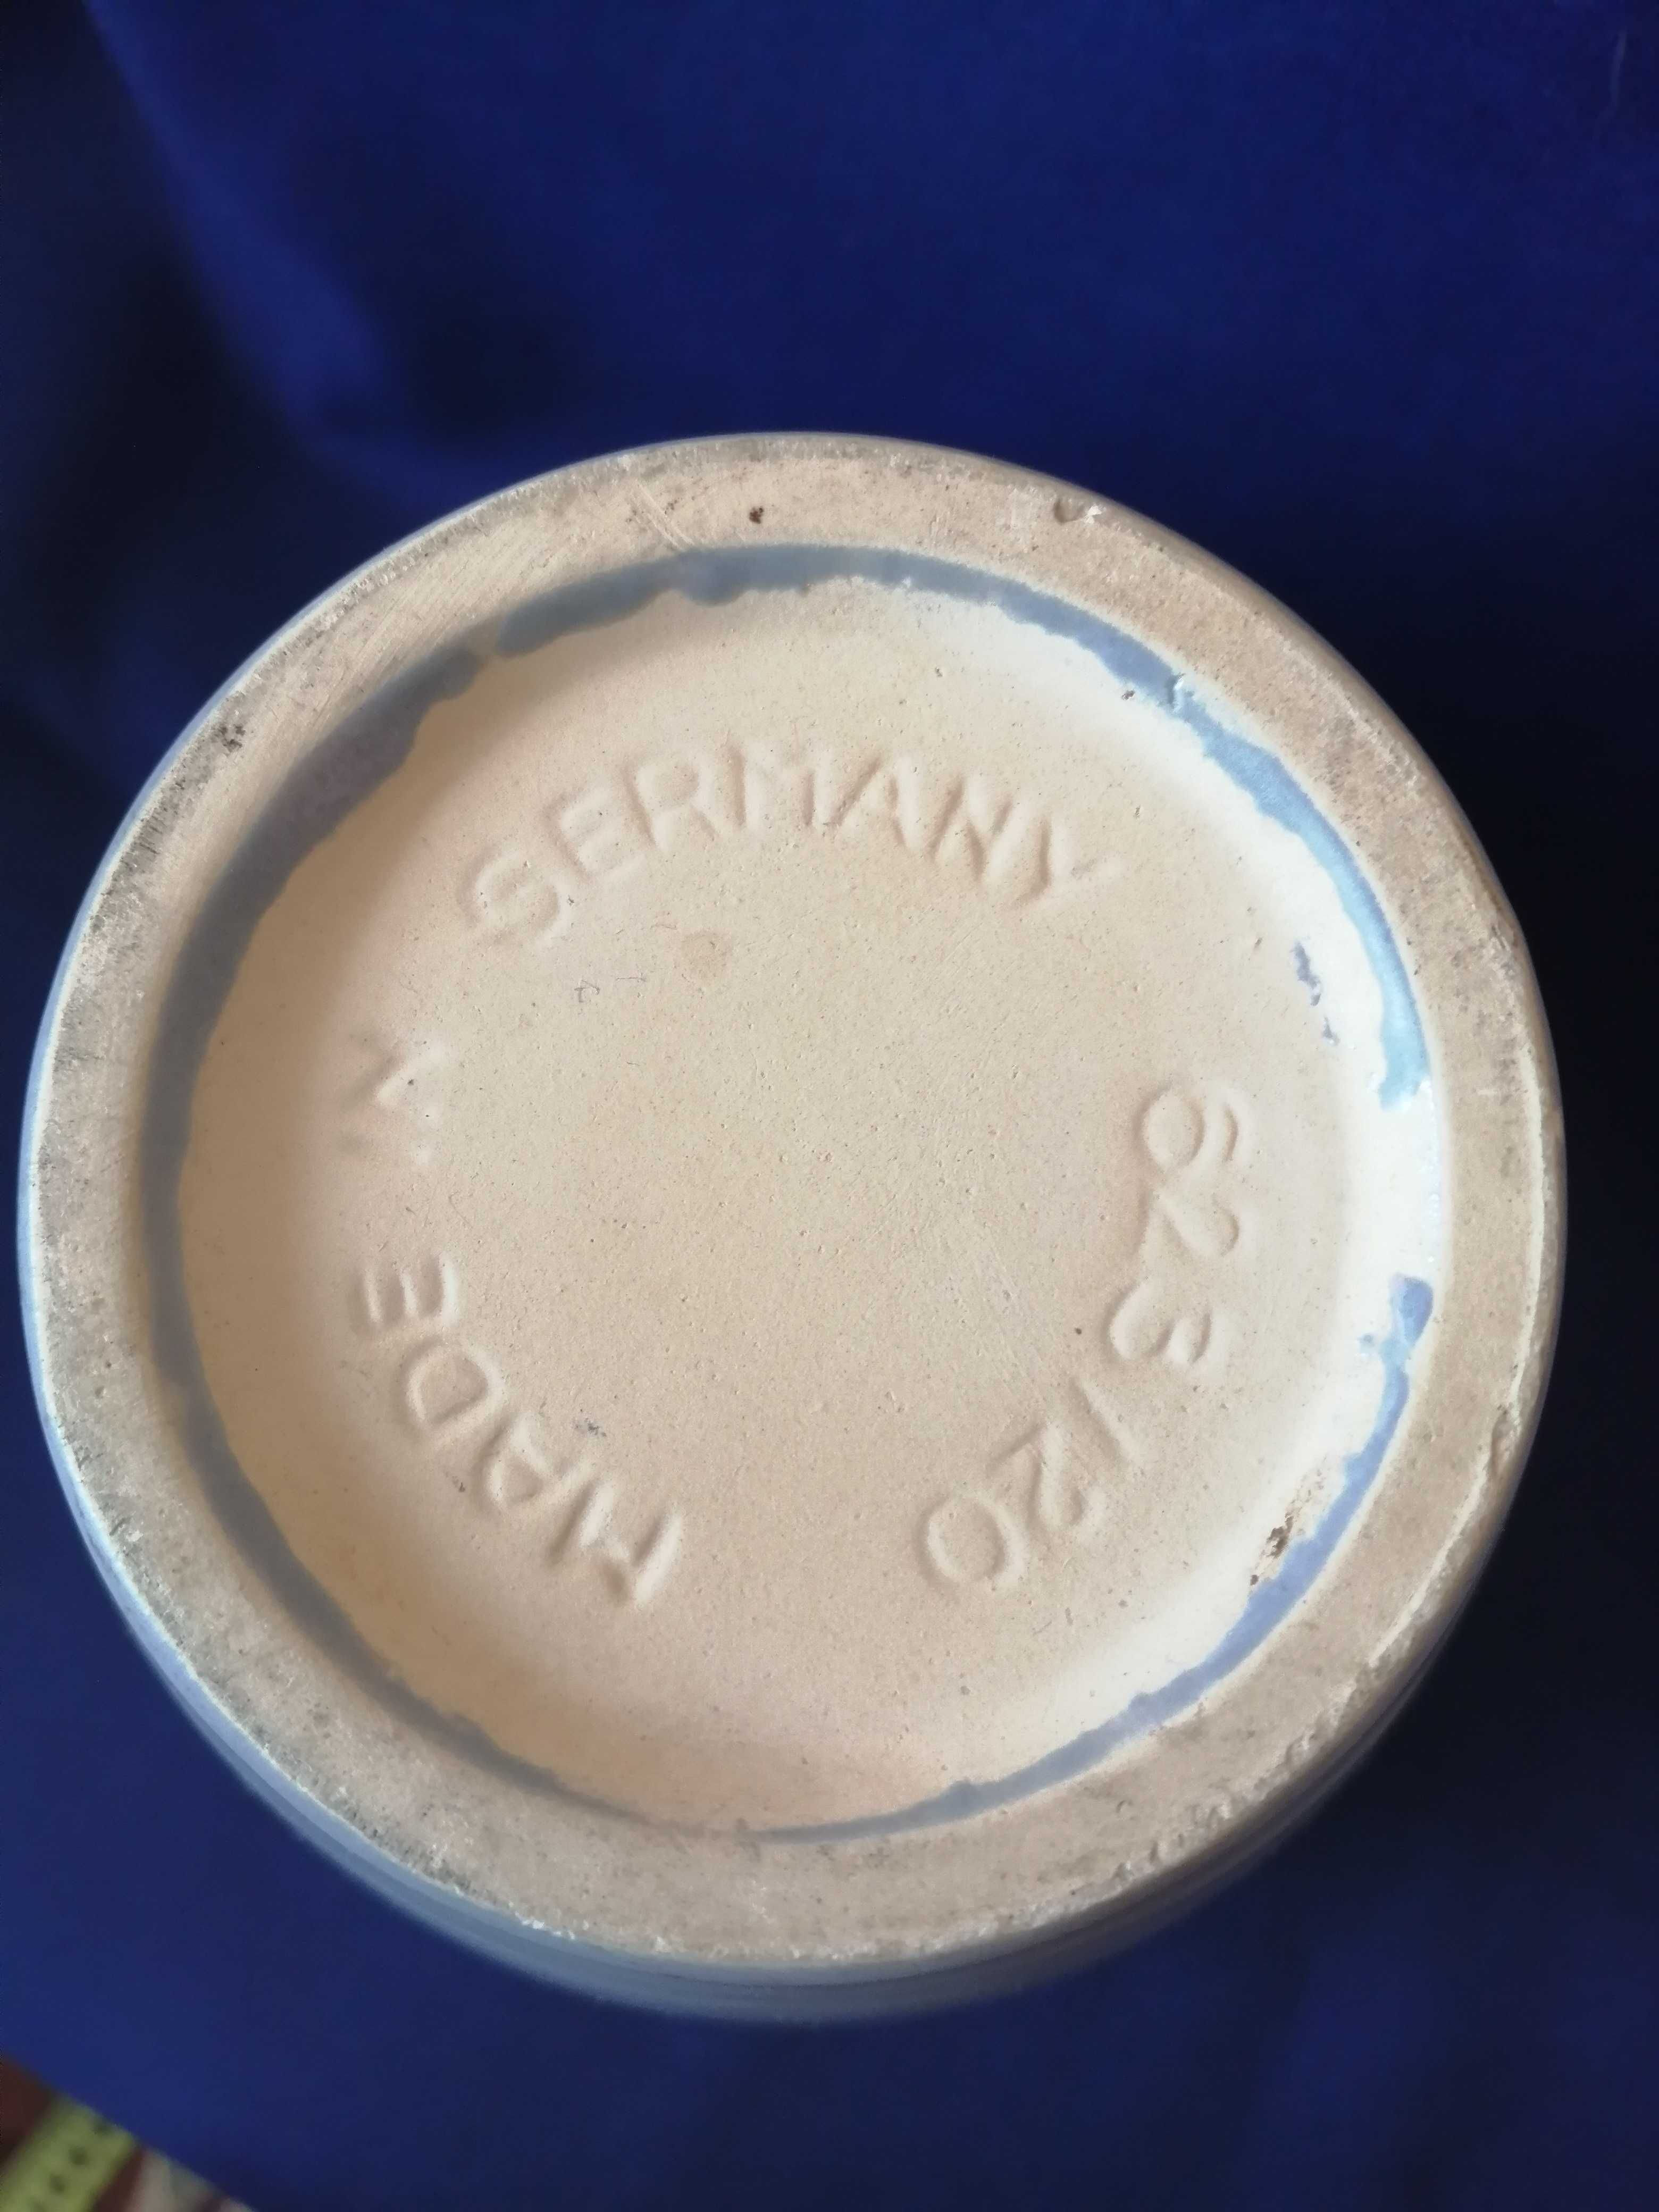 Wazon - W. Germany 623/20 ceramika